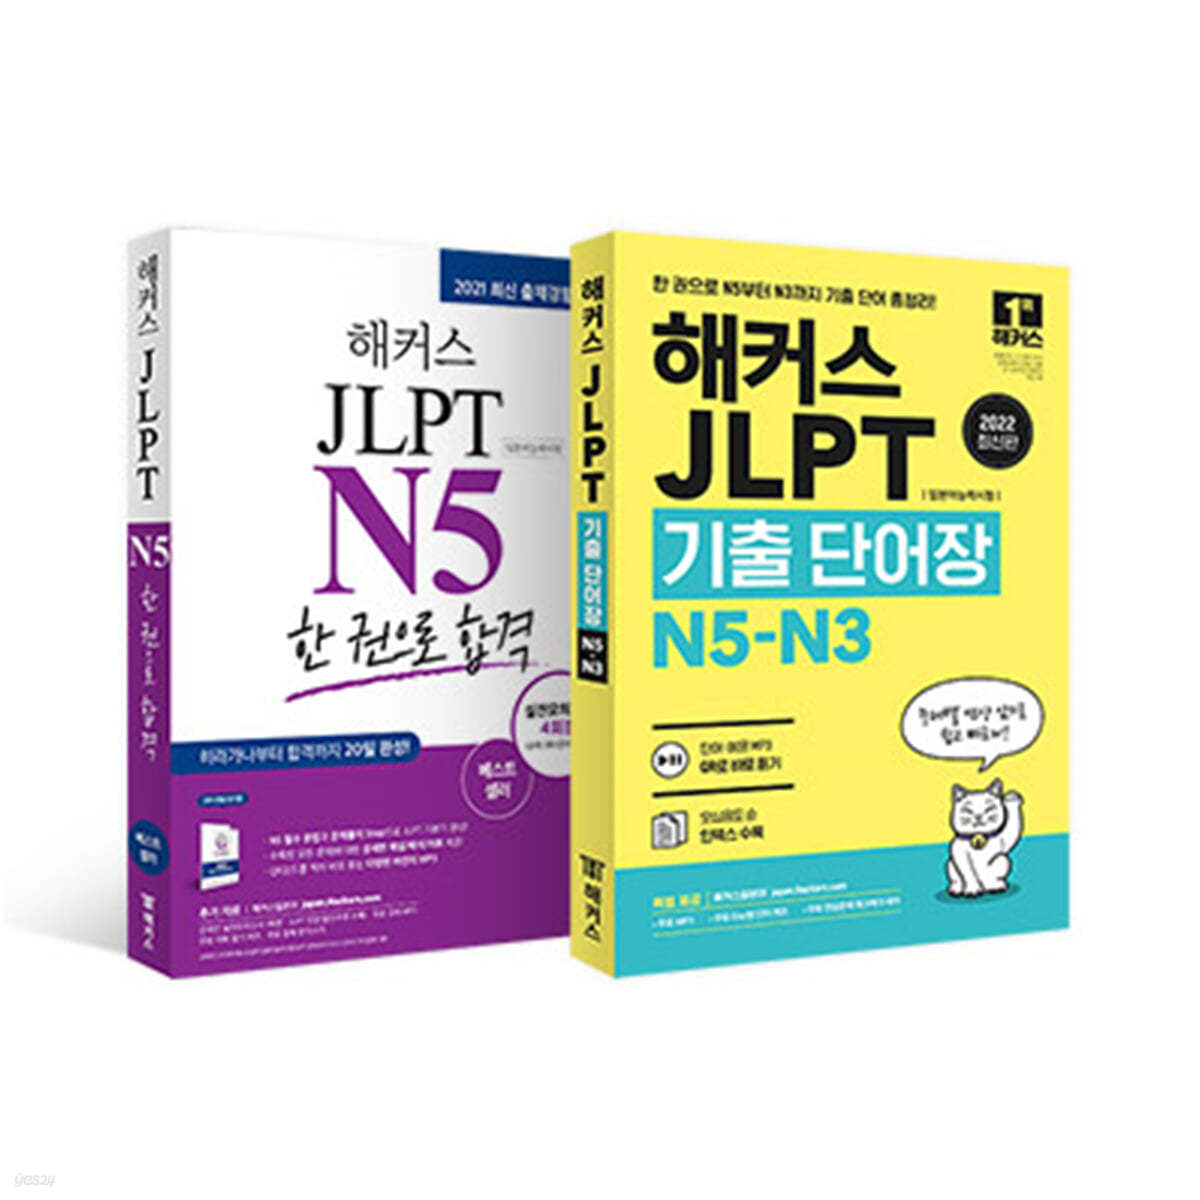 해커스 일본어 JLPT N5 기본서 + 모의고사 + 기출보카 세트